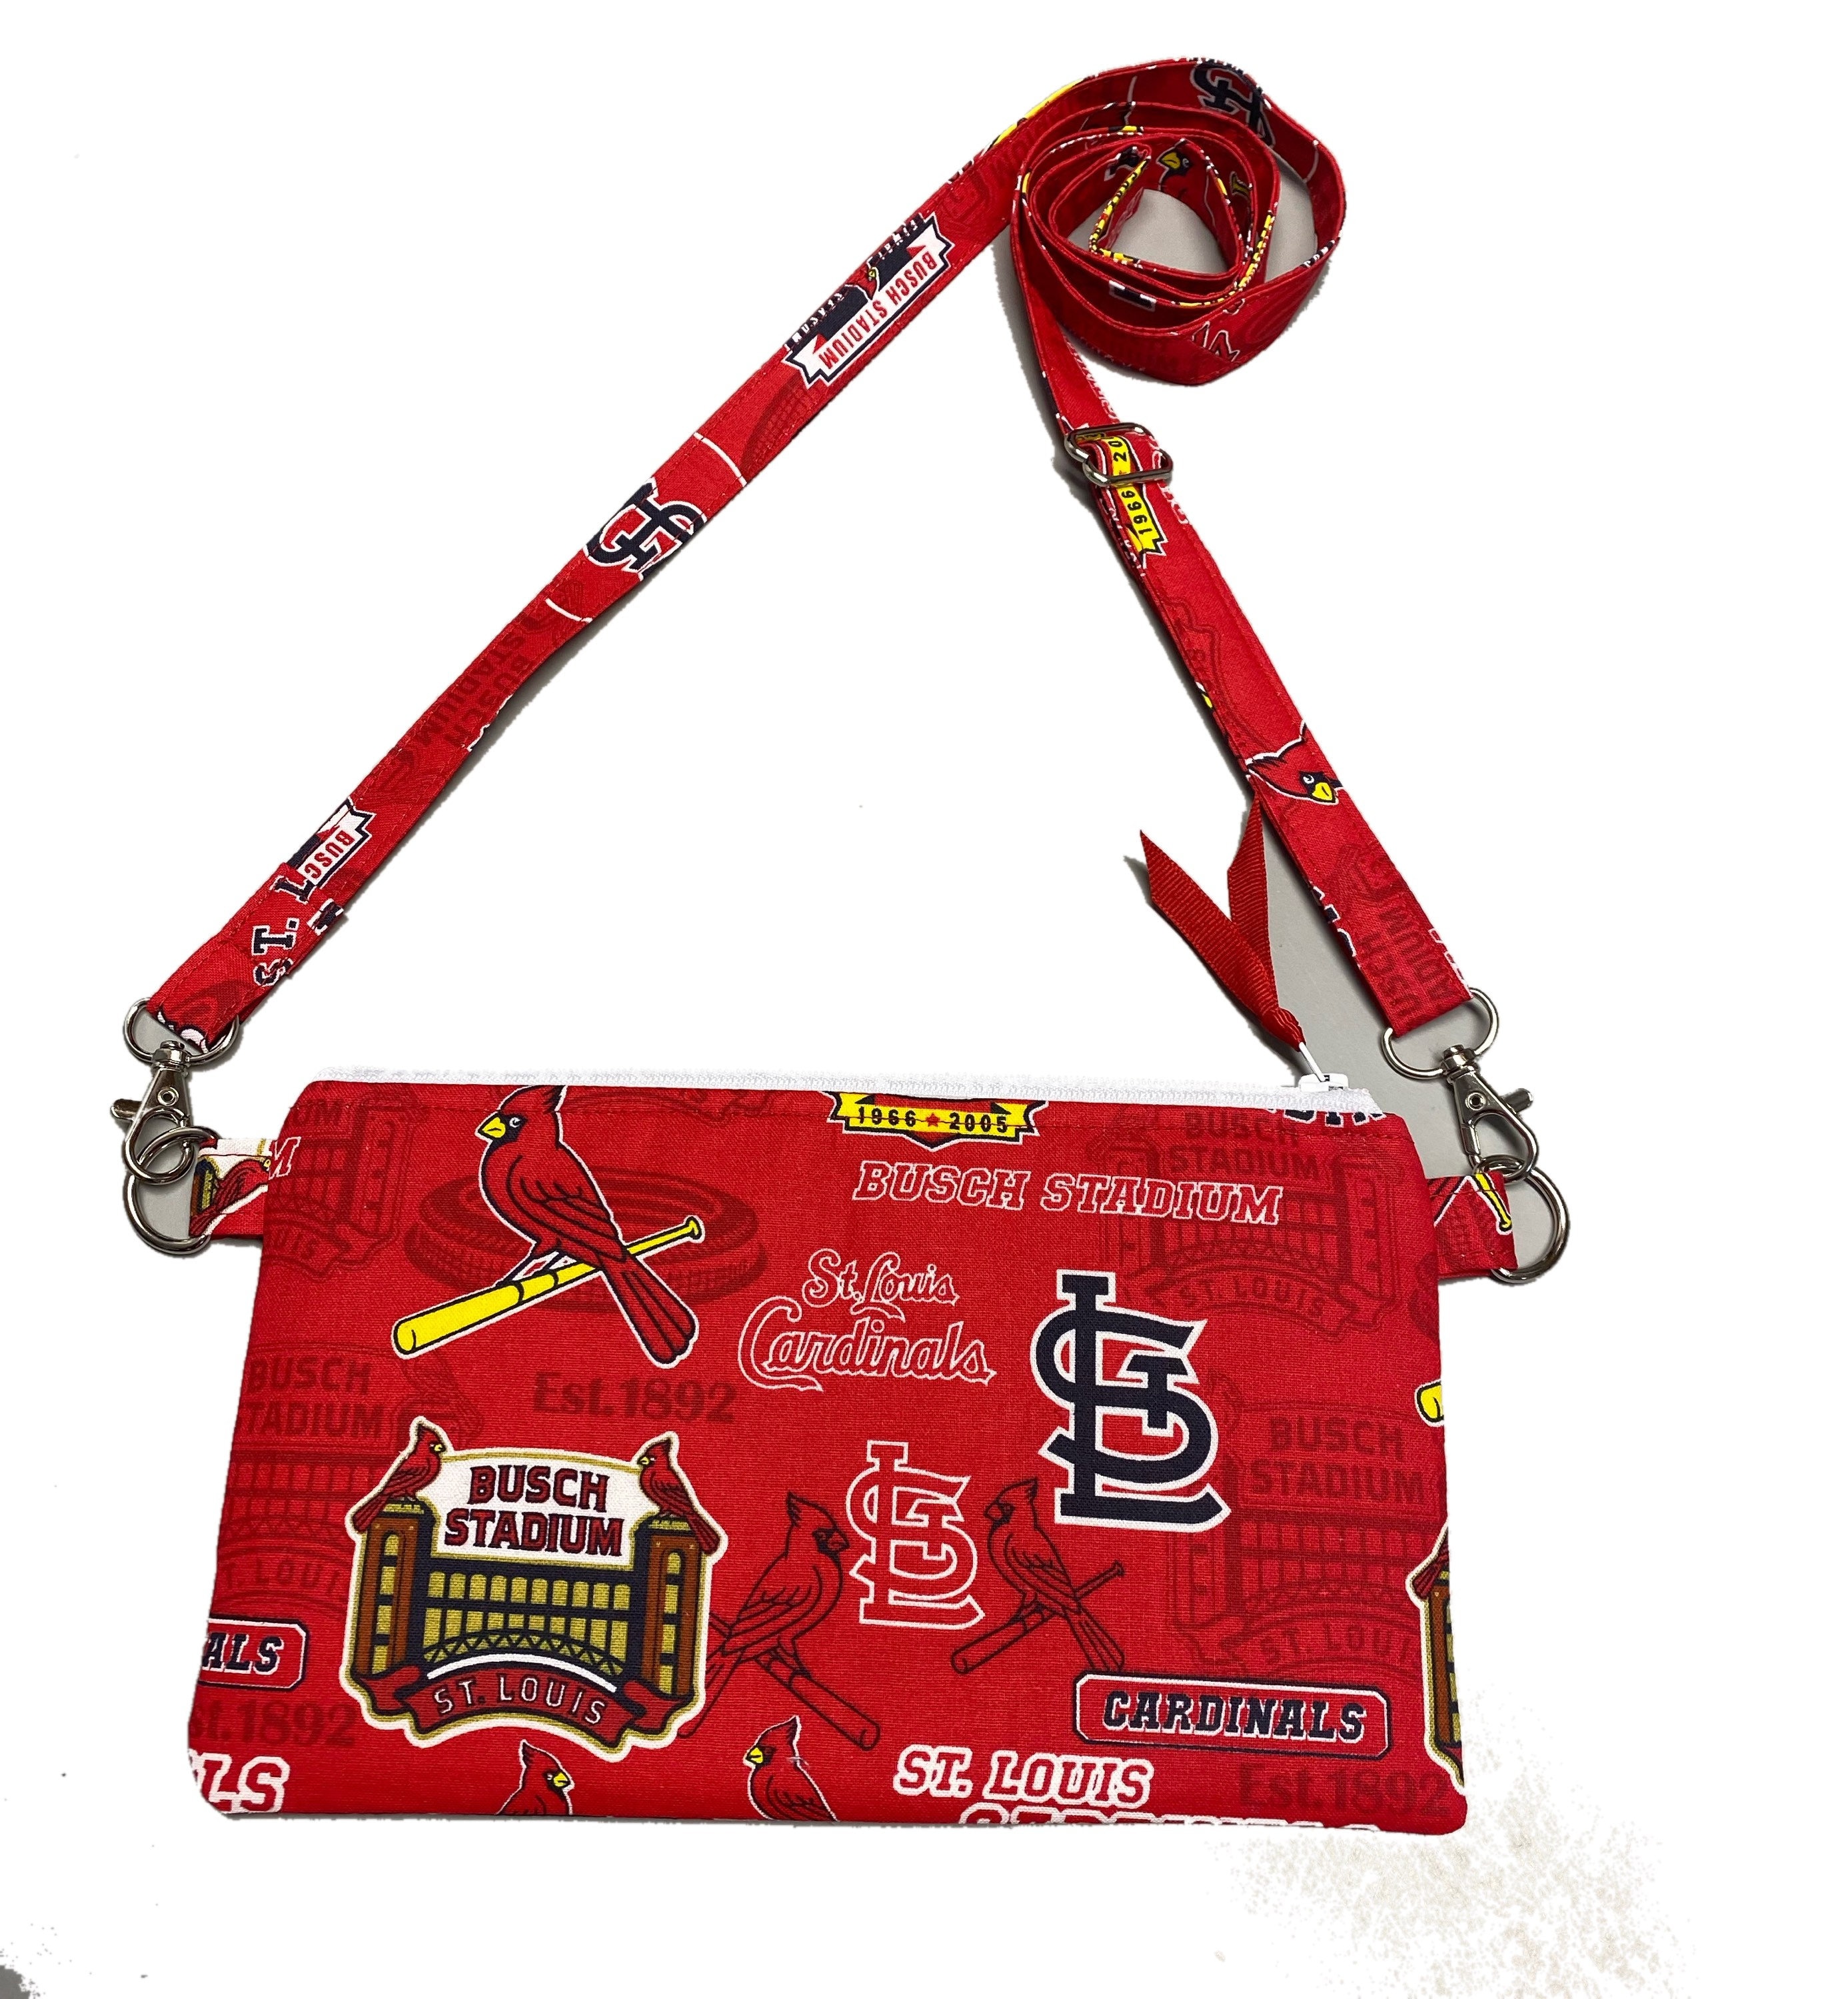 St Louis Cardinals 9 X 5 Stadium Bag 